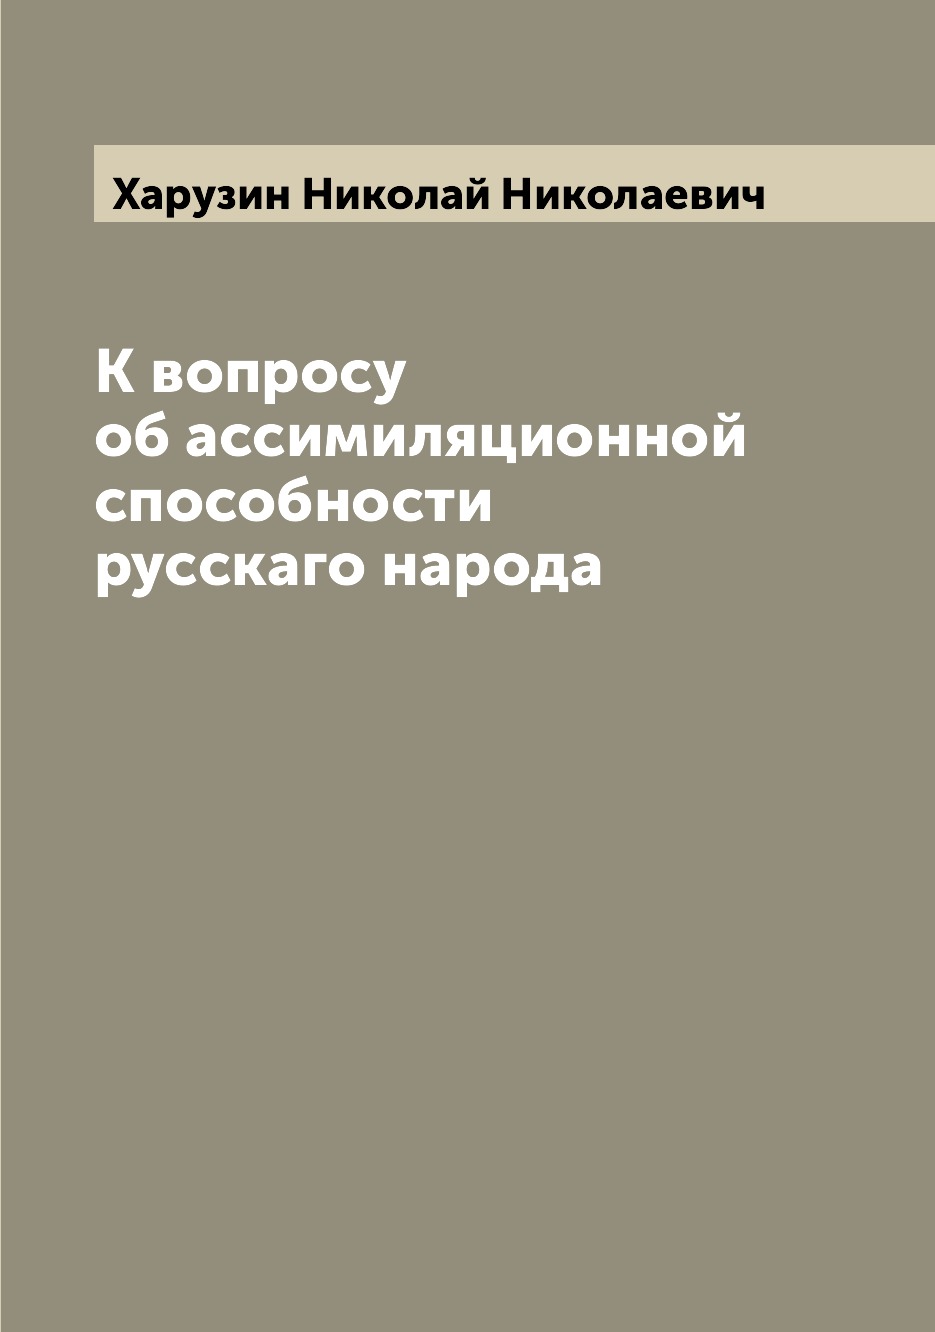 

Книга К вопросу об ассимиляционной способности русскаго народа